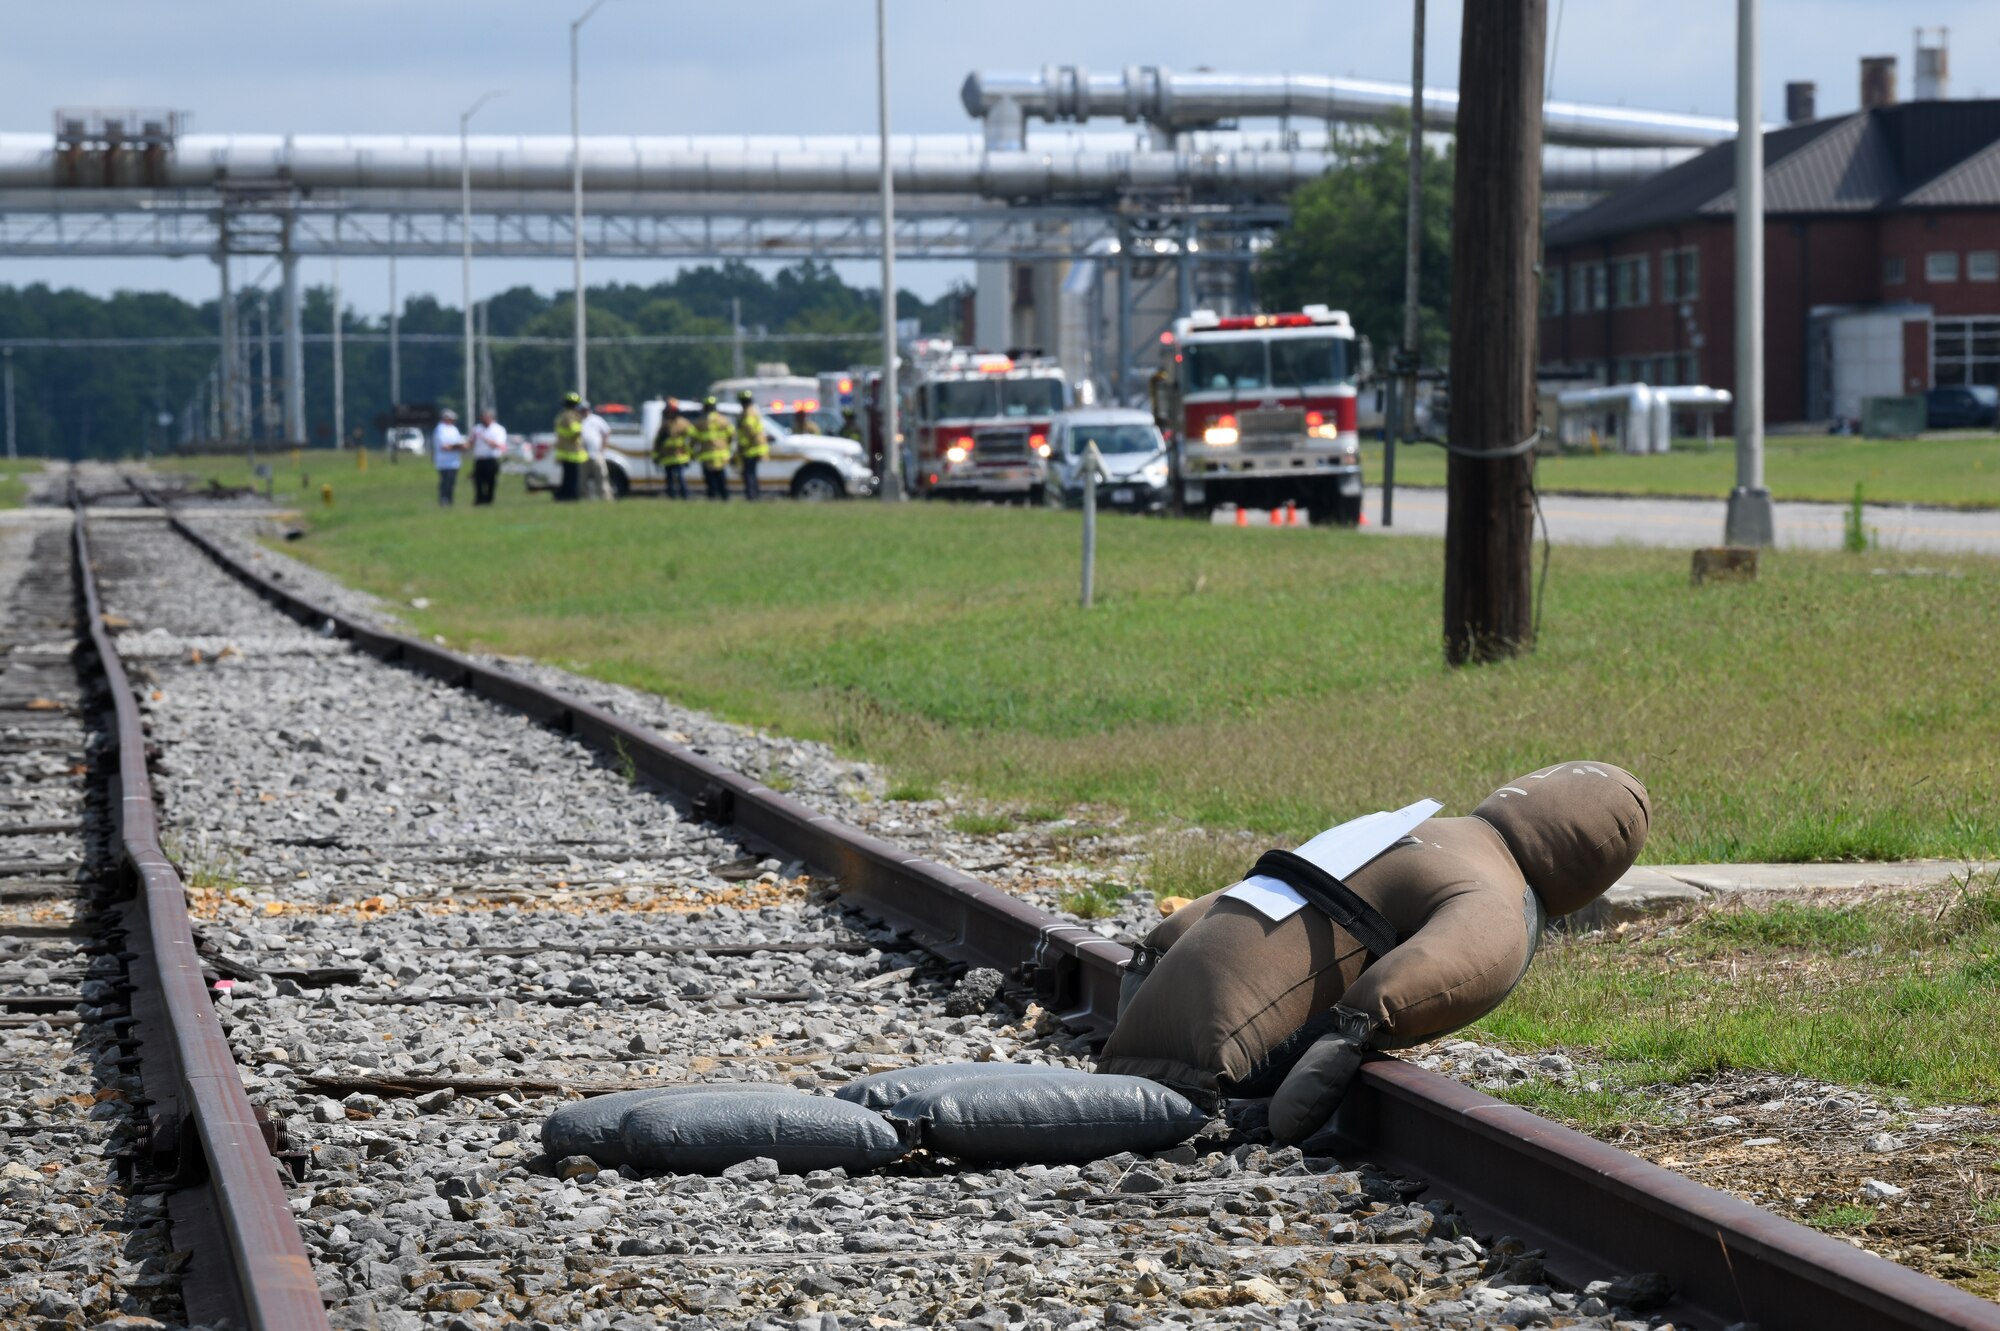 A training dummy on railroad tracks